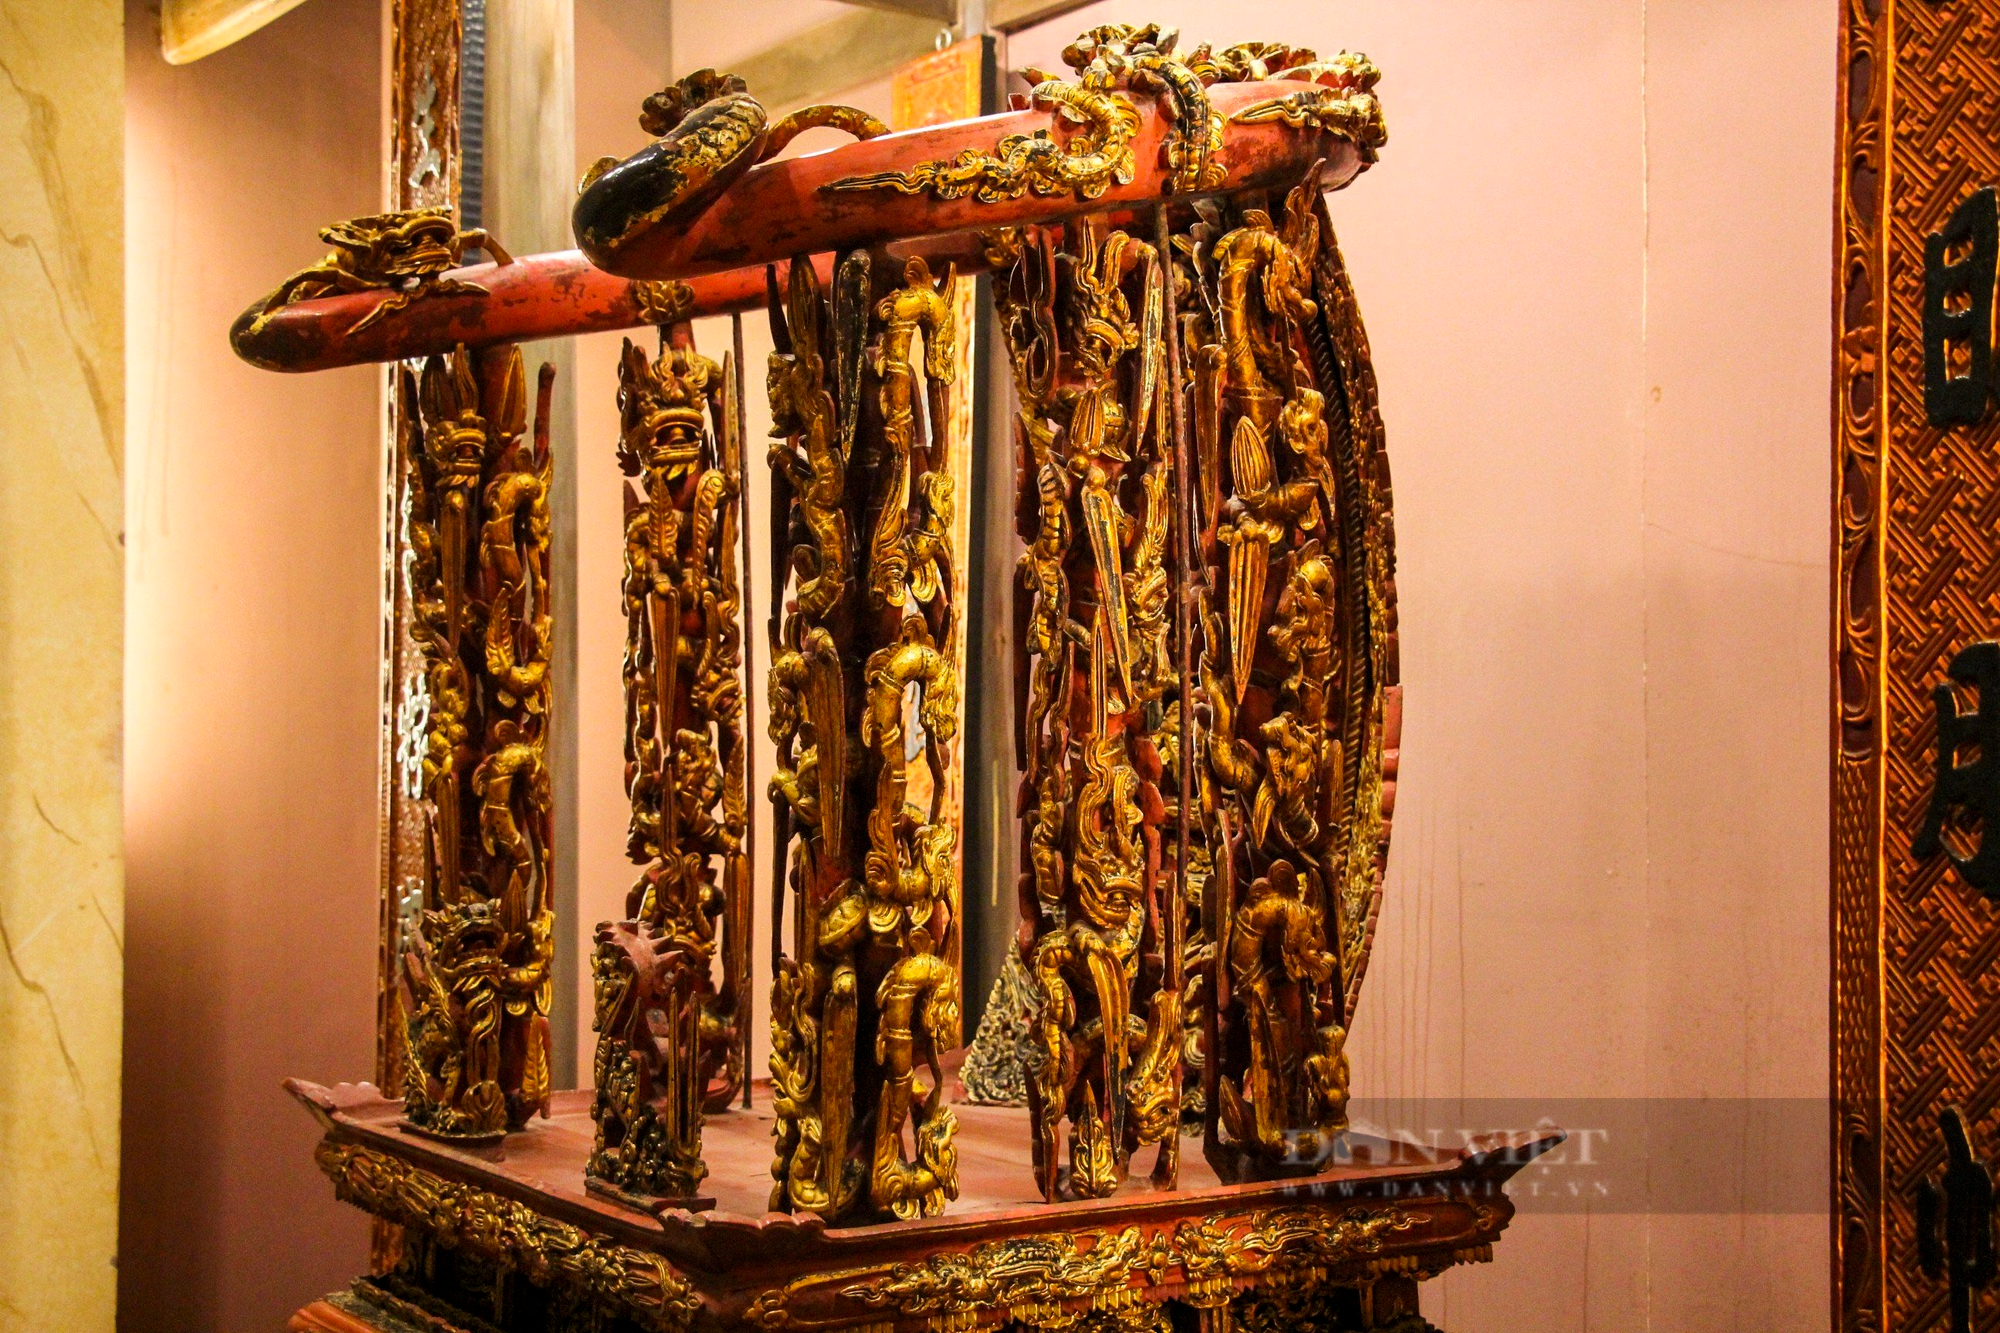 Ngai thờ sơn son thếp vàng 300 tuổi ở Thái Bình được công nhận là bảo vật quốc gia - Ảnh 5.